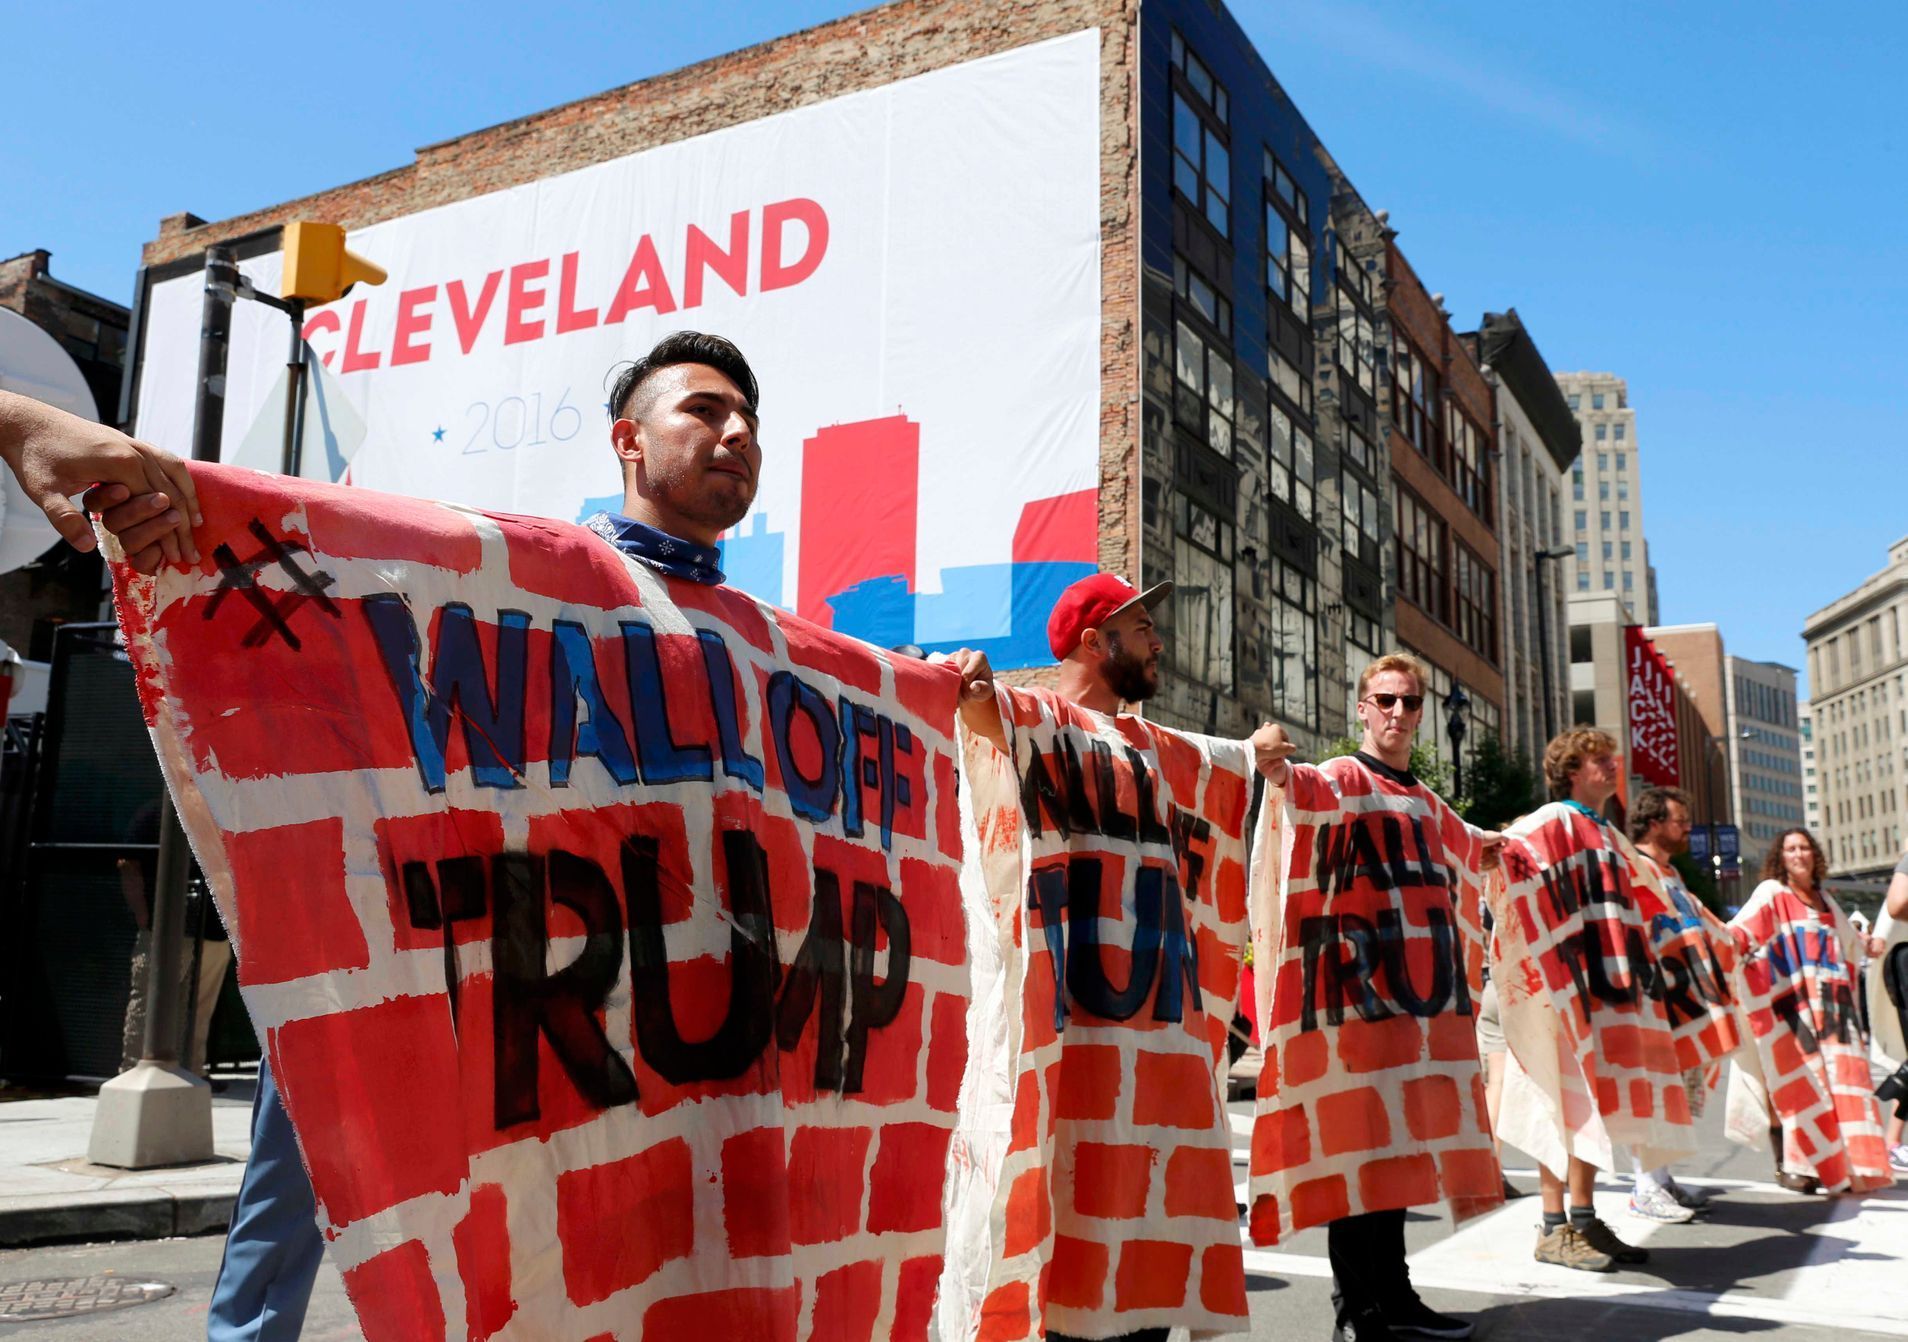 Protestující vytvářejí zeď v reakci na imigrační politiku Donalda Trumpa